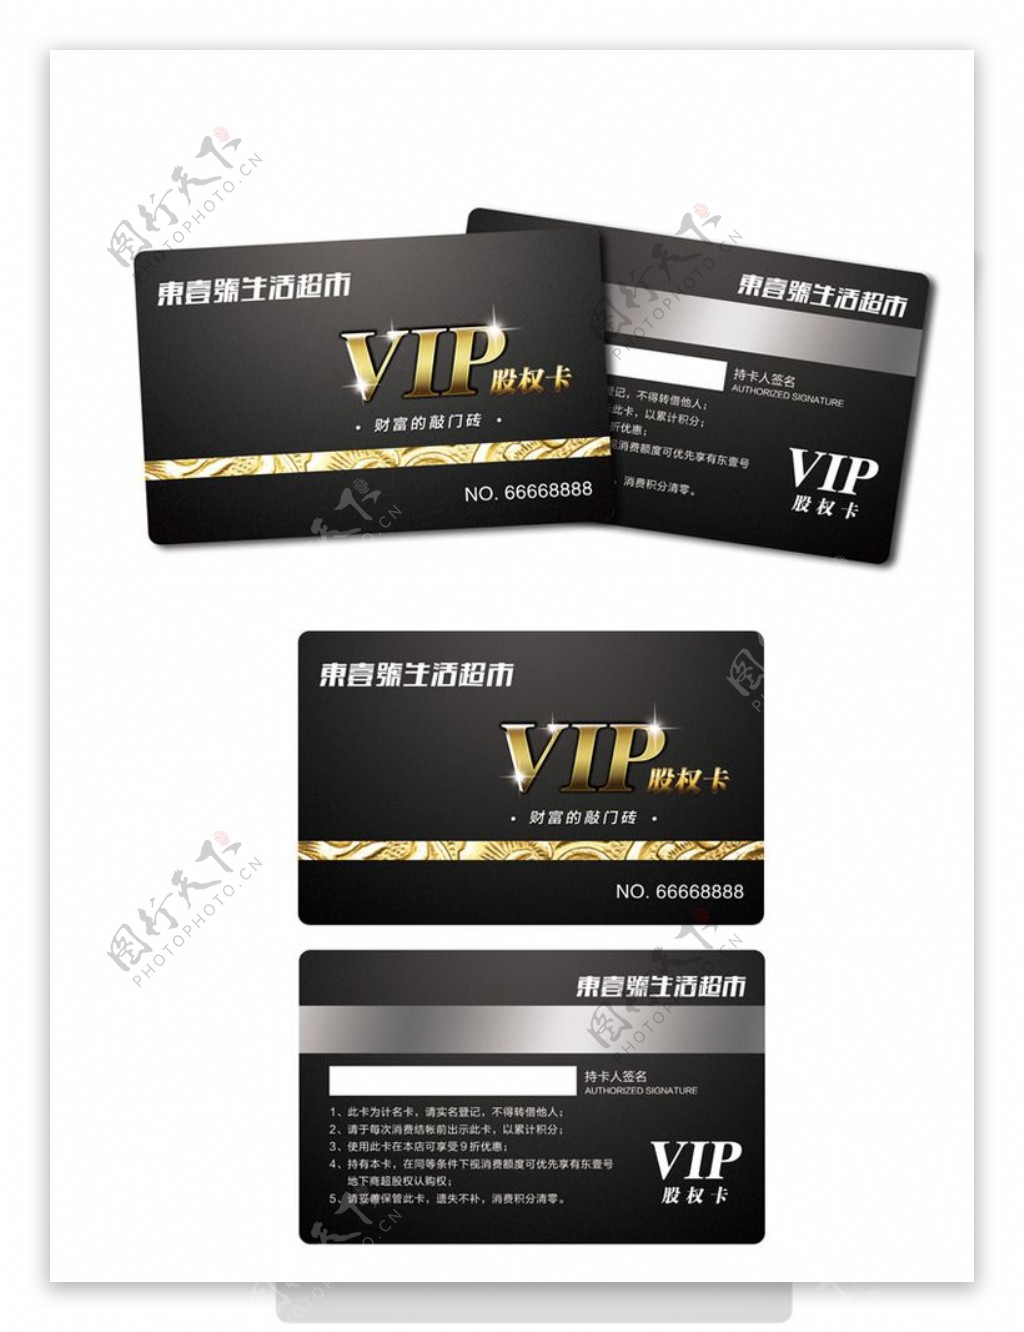 高清VIP会员卡设计源文件